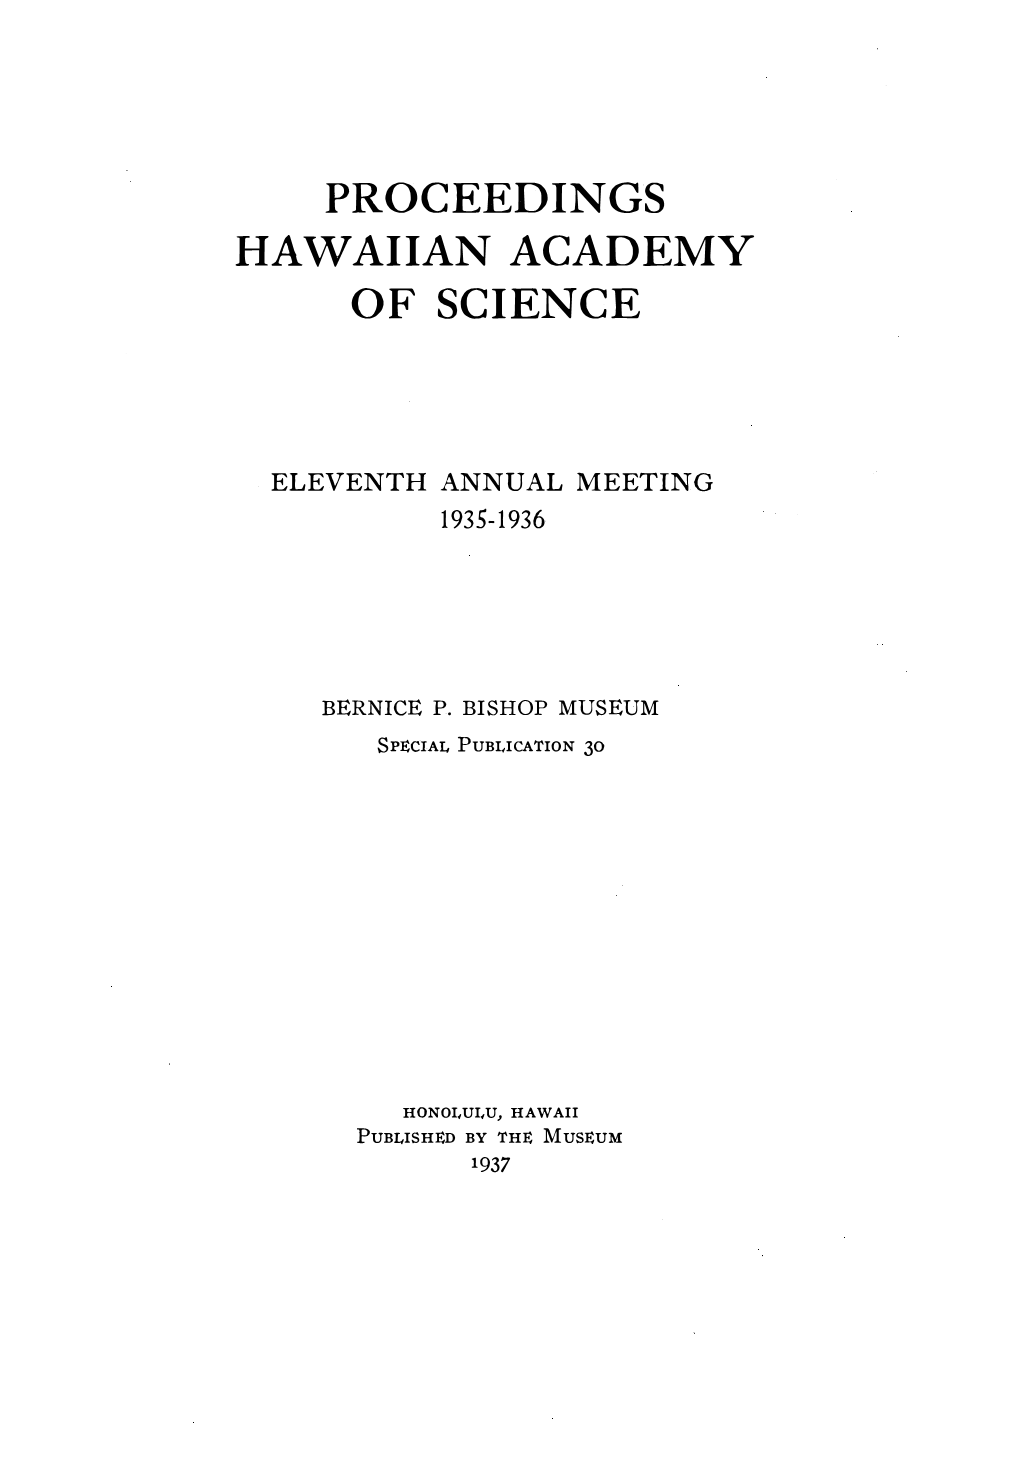 Proceedings Hawaiian Academy of Science